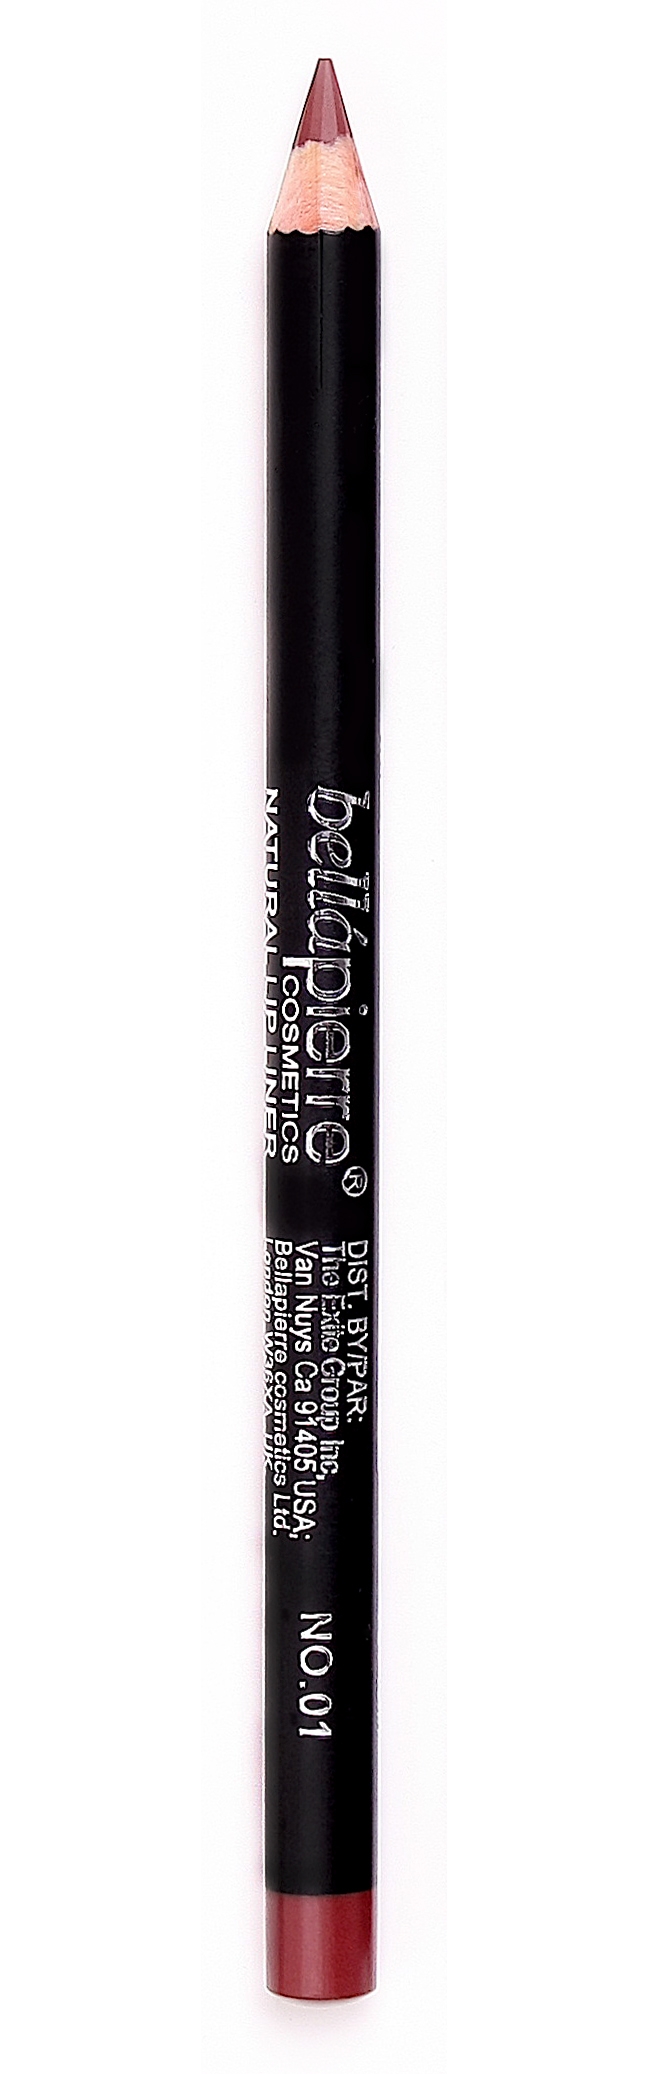 Bellapierre lip liner pencil 01 Natural